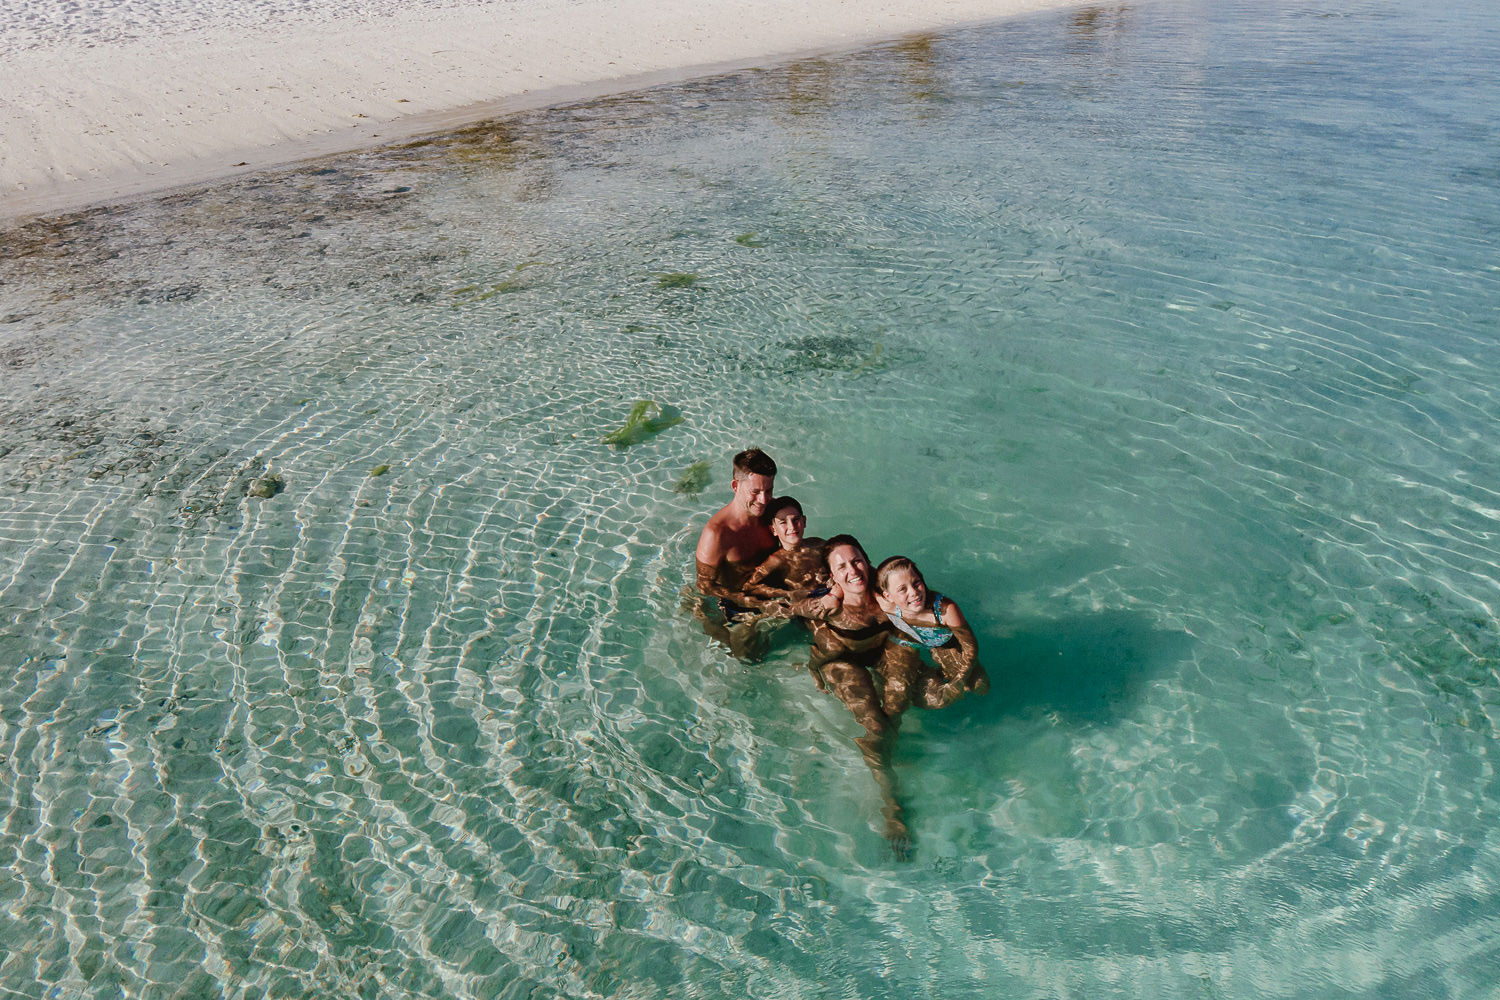 wedding photographer in maldives anniversary trip cocoon private beach sea family fun